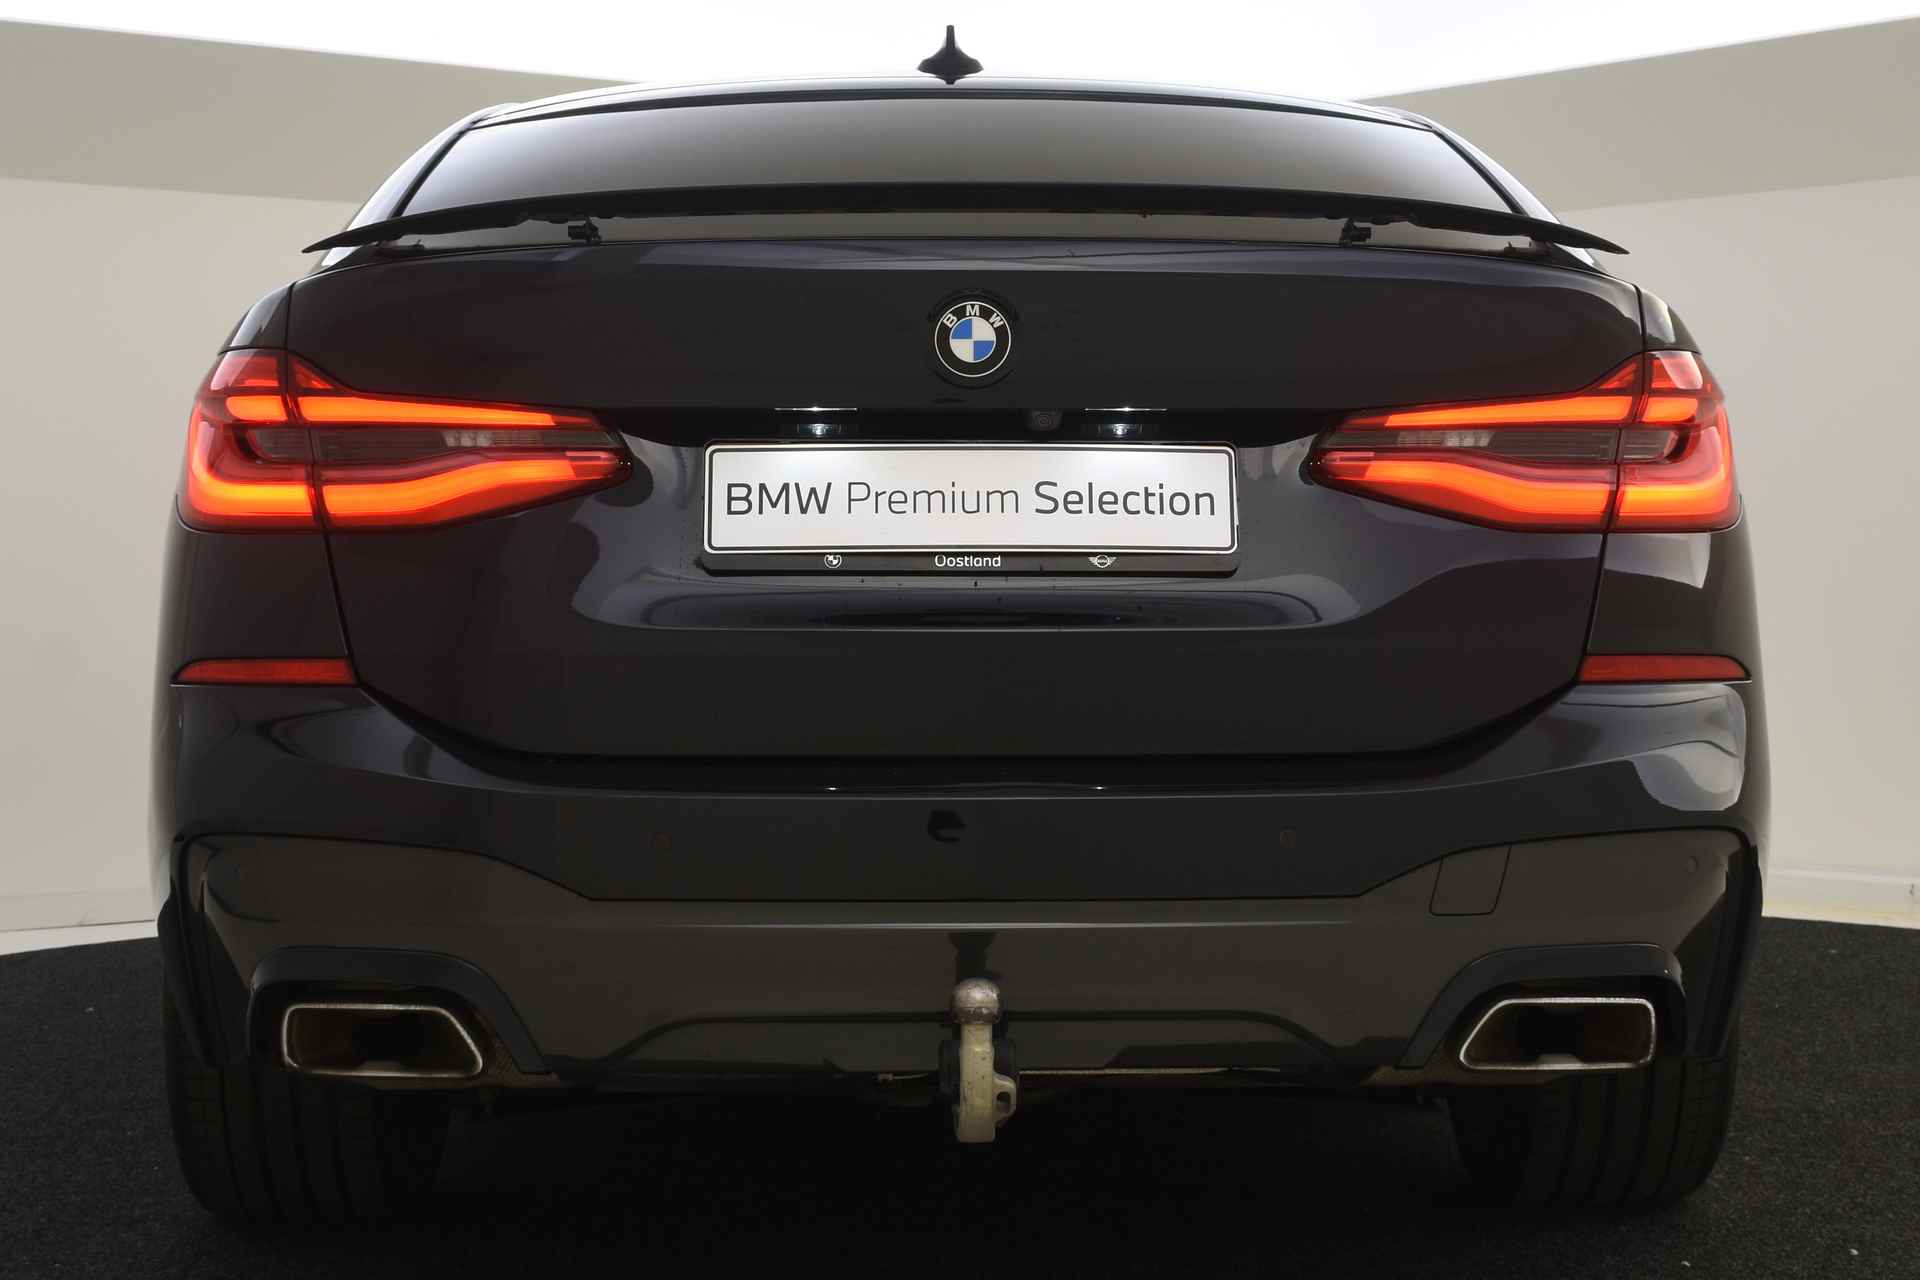 BMW 6 Serie Gran Turismo 640i High Executive M Sport Automaat / Panoramadak / Adaptieve LED / Active Cruise Control / Harman Kardon / Navigatie Professional / Comfort Access - 10/58